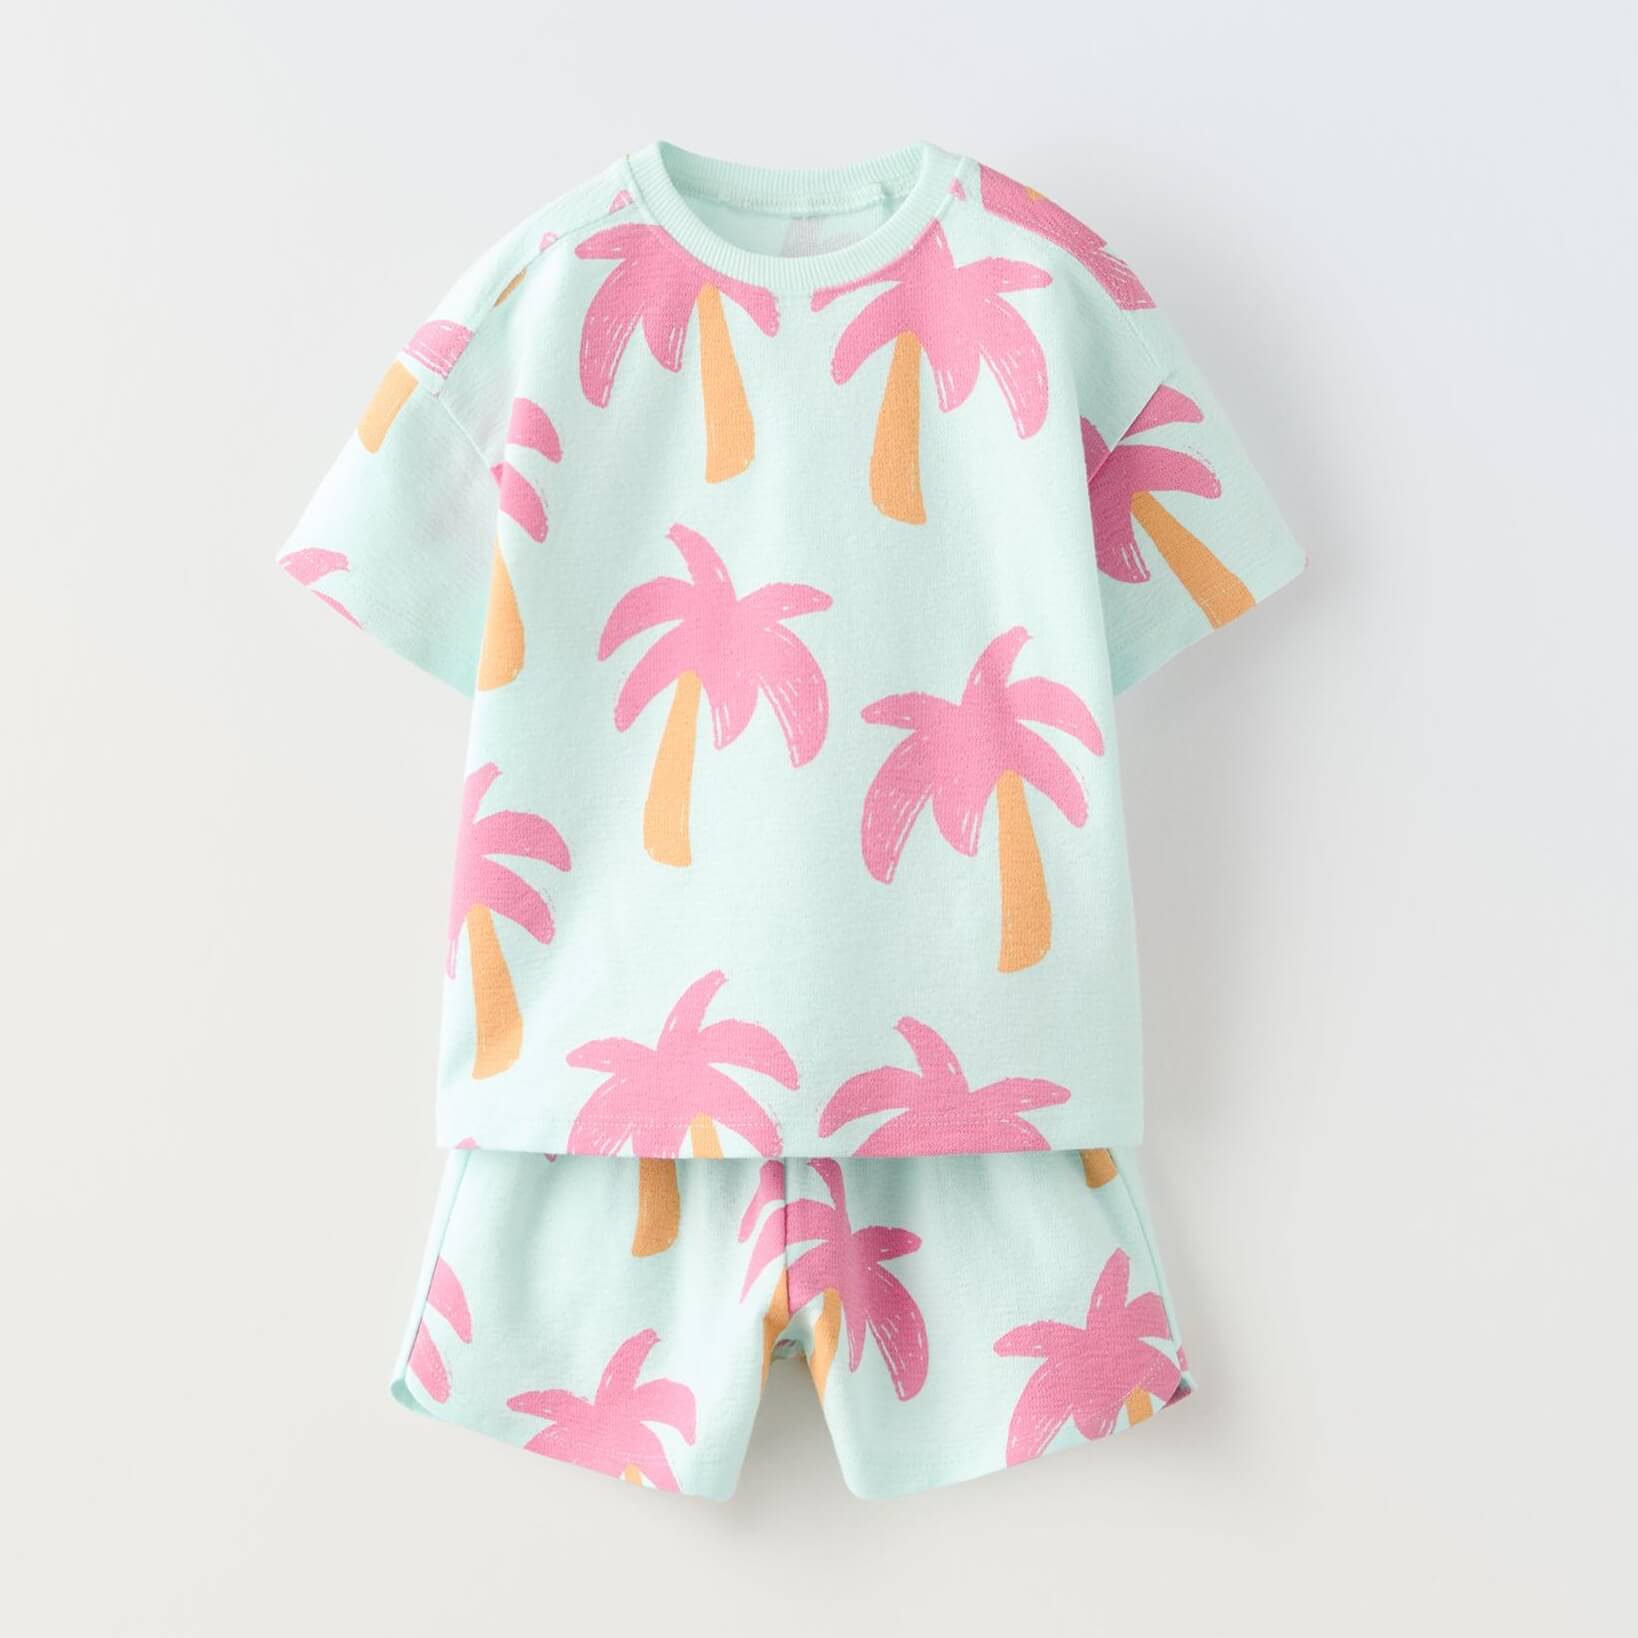 Комплект футболка + шорты Zara Summer Camp Palm Tree Print, бирюзовый/розовый шорты с аппликациями на 9 12 месяцев